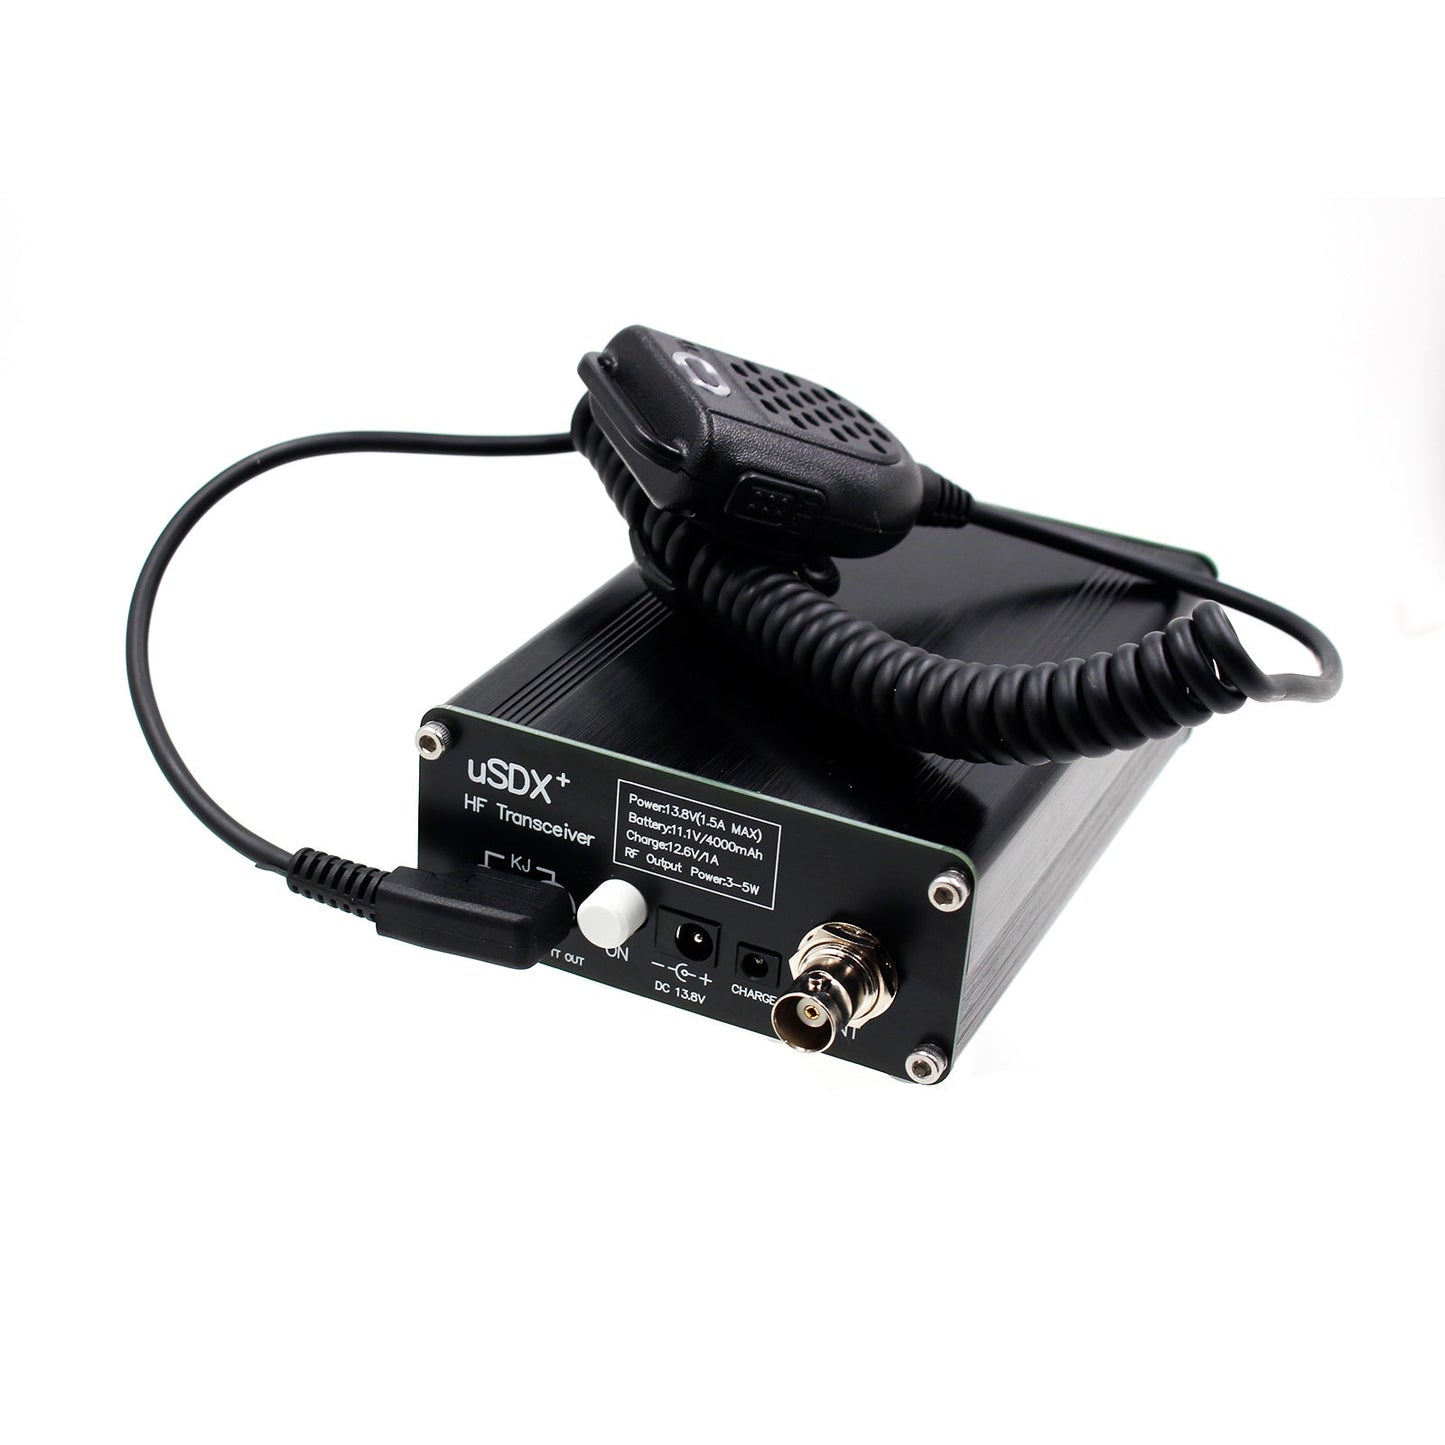 USDR USDX + Plus V2 8 bandes SDR mode complet HF HAM Radio SSB QRP émetteur-récepteur mise à niveau générique